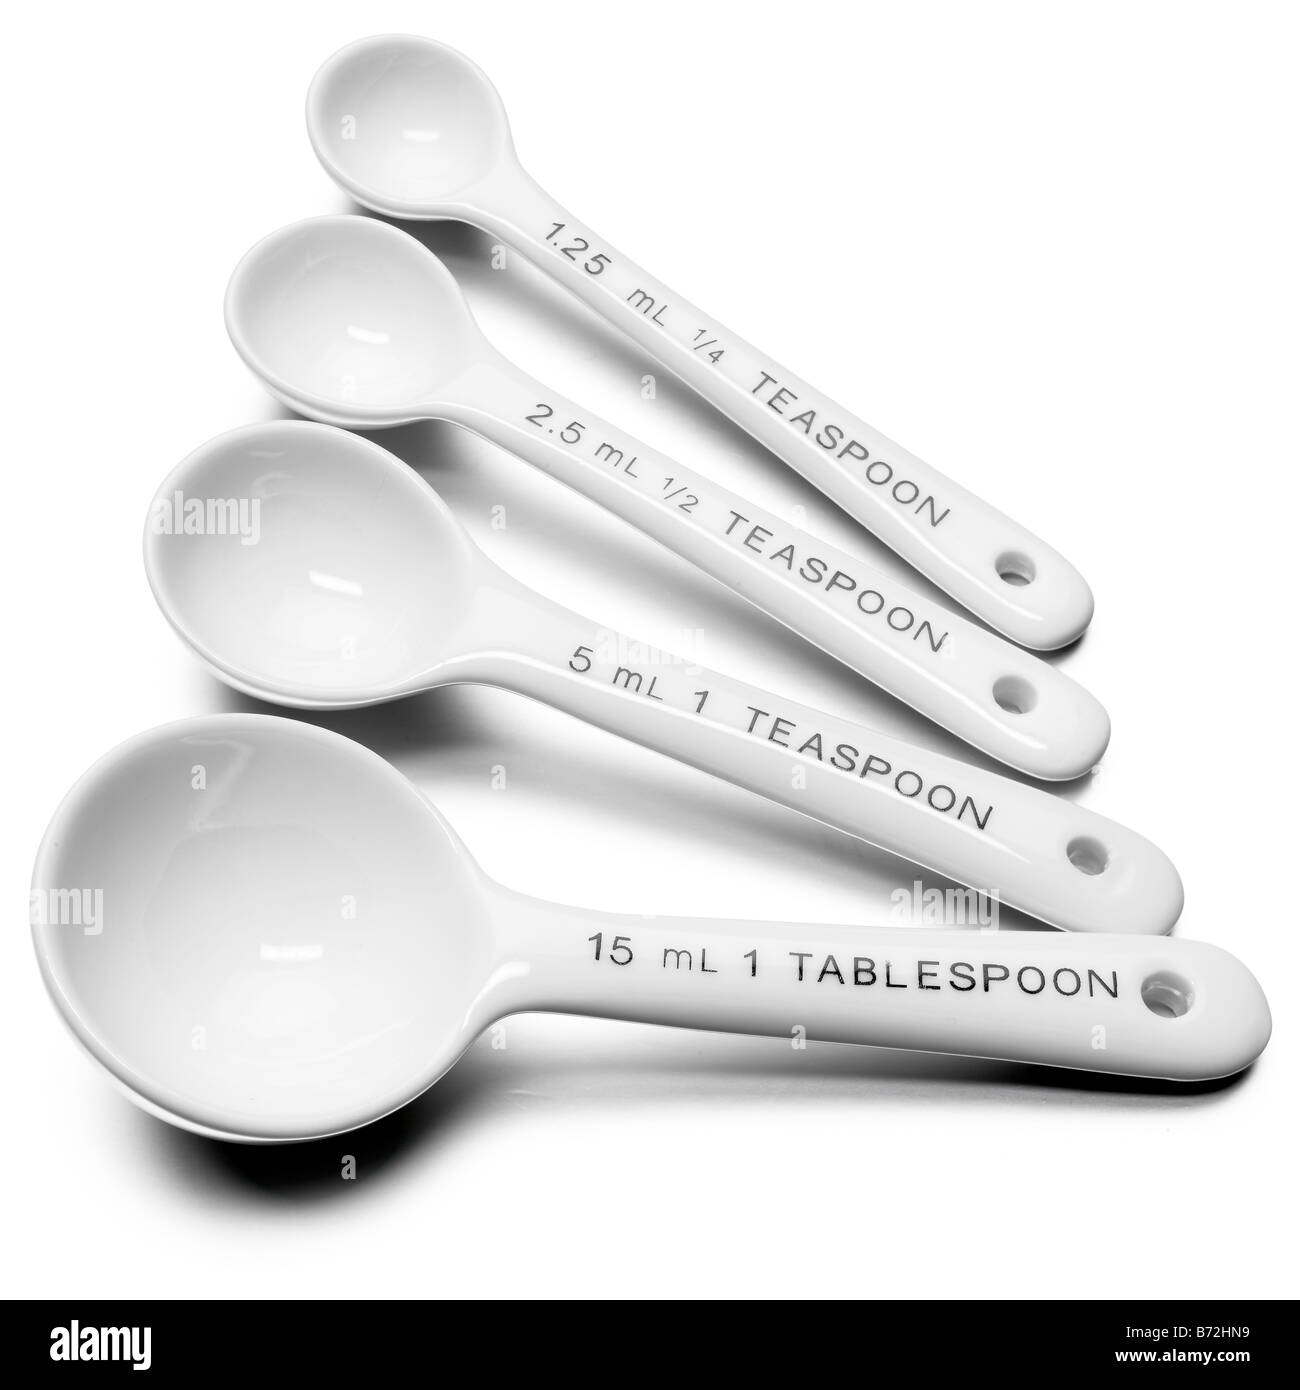 https://c8.alamy.com/comp/B72HN9/ceramic-measure-spoons-metric-imperial-set-B72HN9.jpg